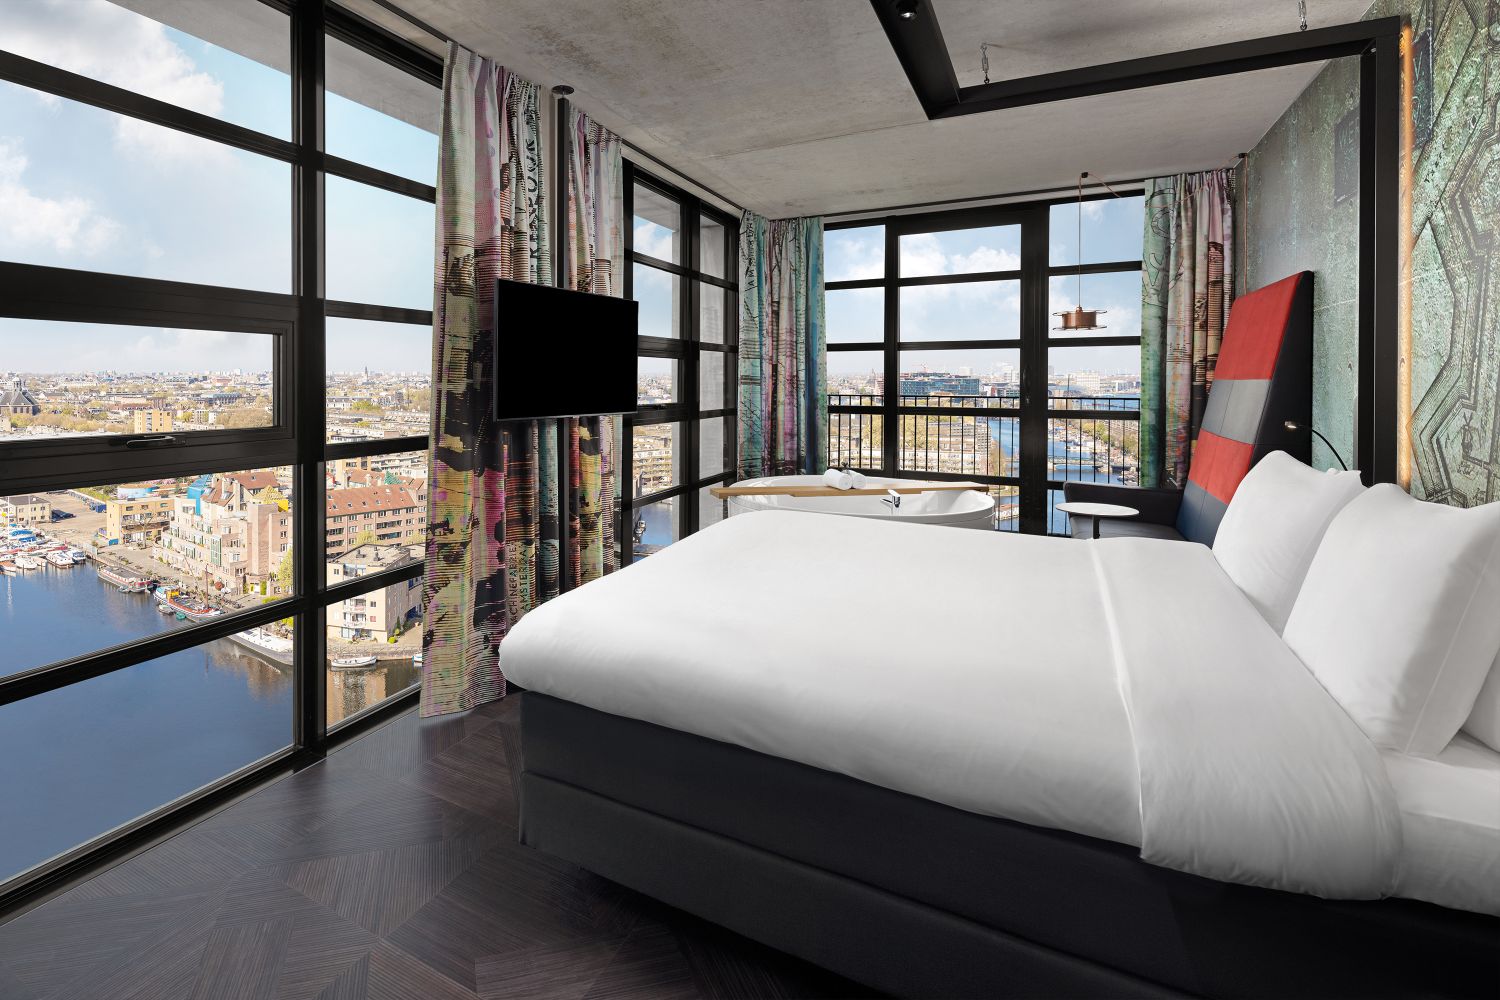 Hotel highlight: Inntel Hotels, Inntel Hotels Amsterdam Centre & Landmark